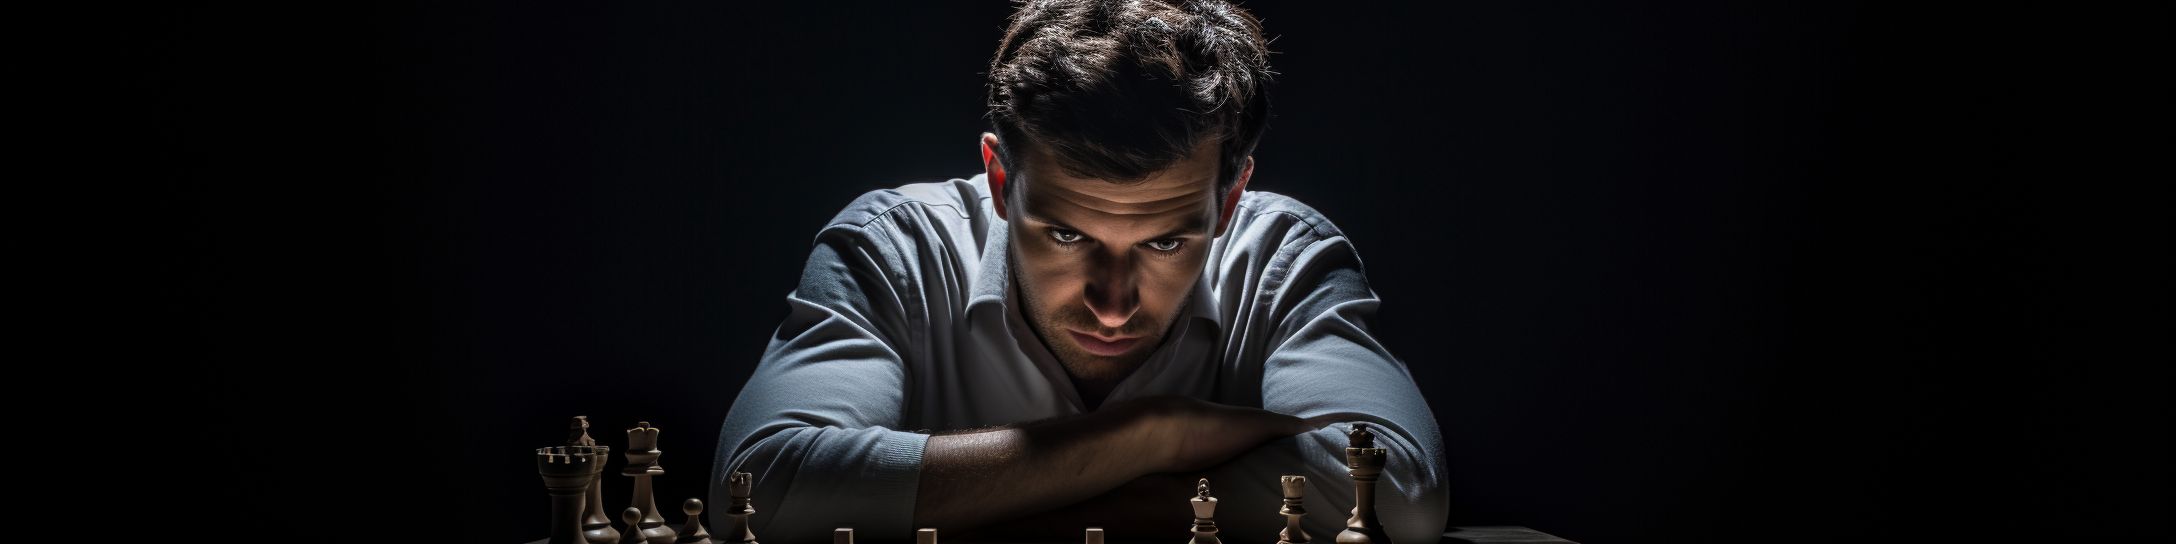  Profil d'un joueur d'échecs compétitif